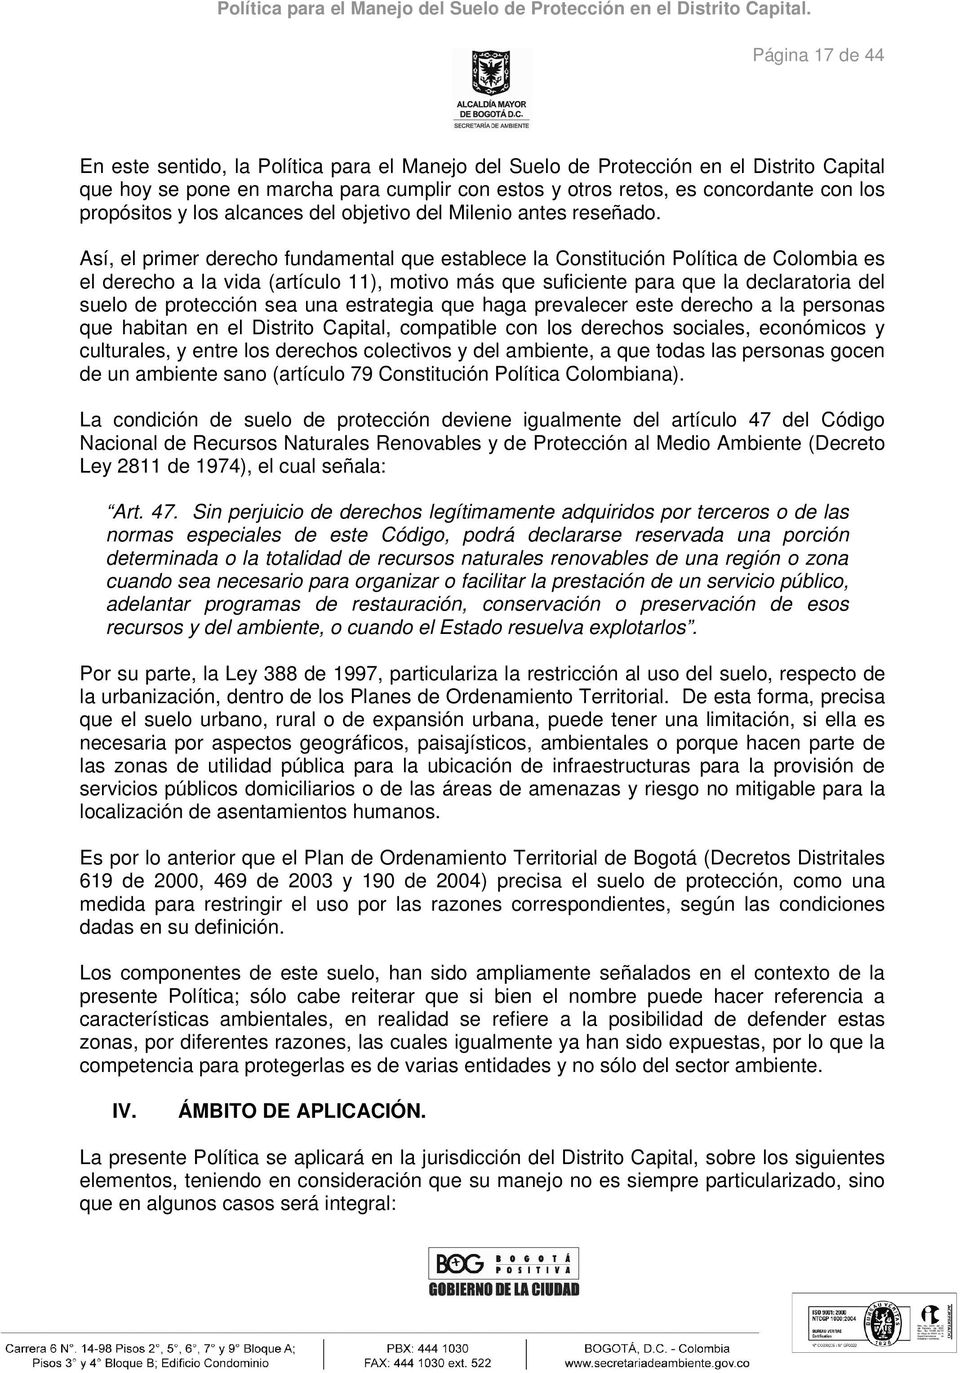 Así, el primer derecho fundamental que establece la Constitución Política de Colombia es el derecho a la vida (artículo 11), motivo más que suficiente para que la declaratoria del suelo de protección